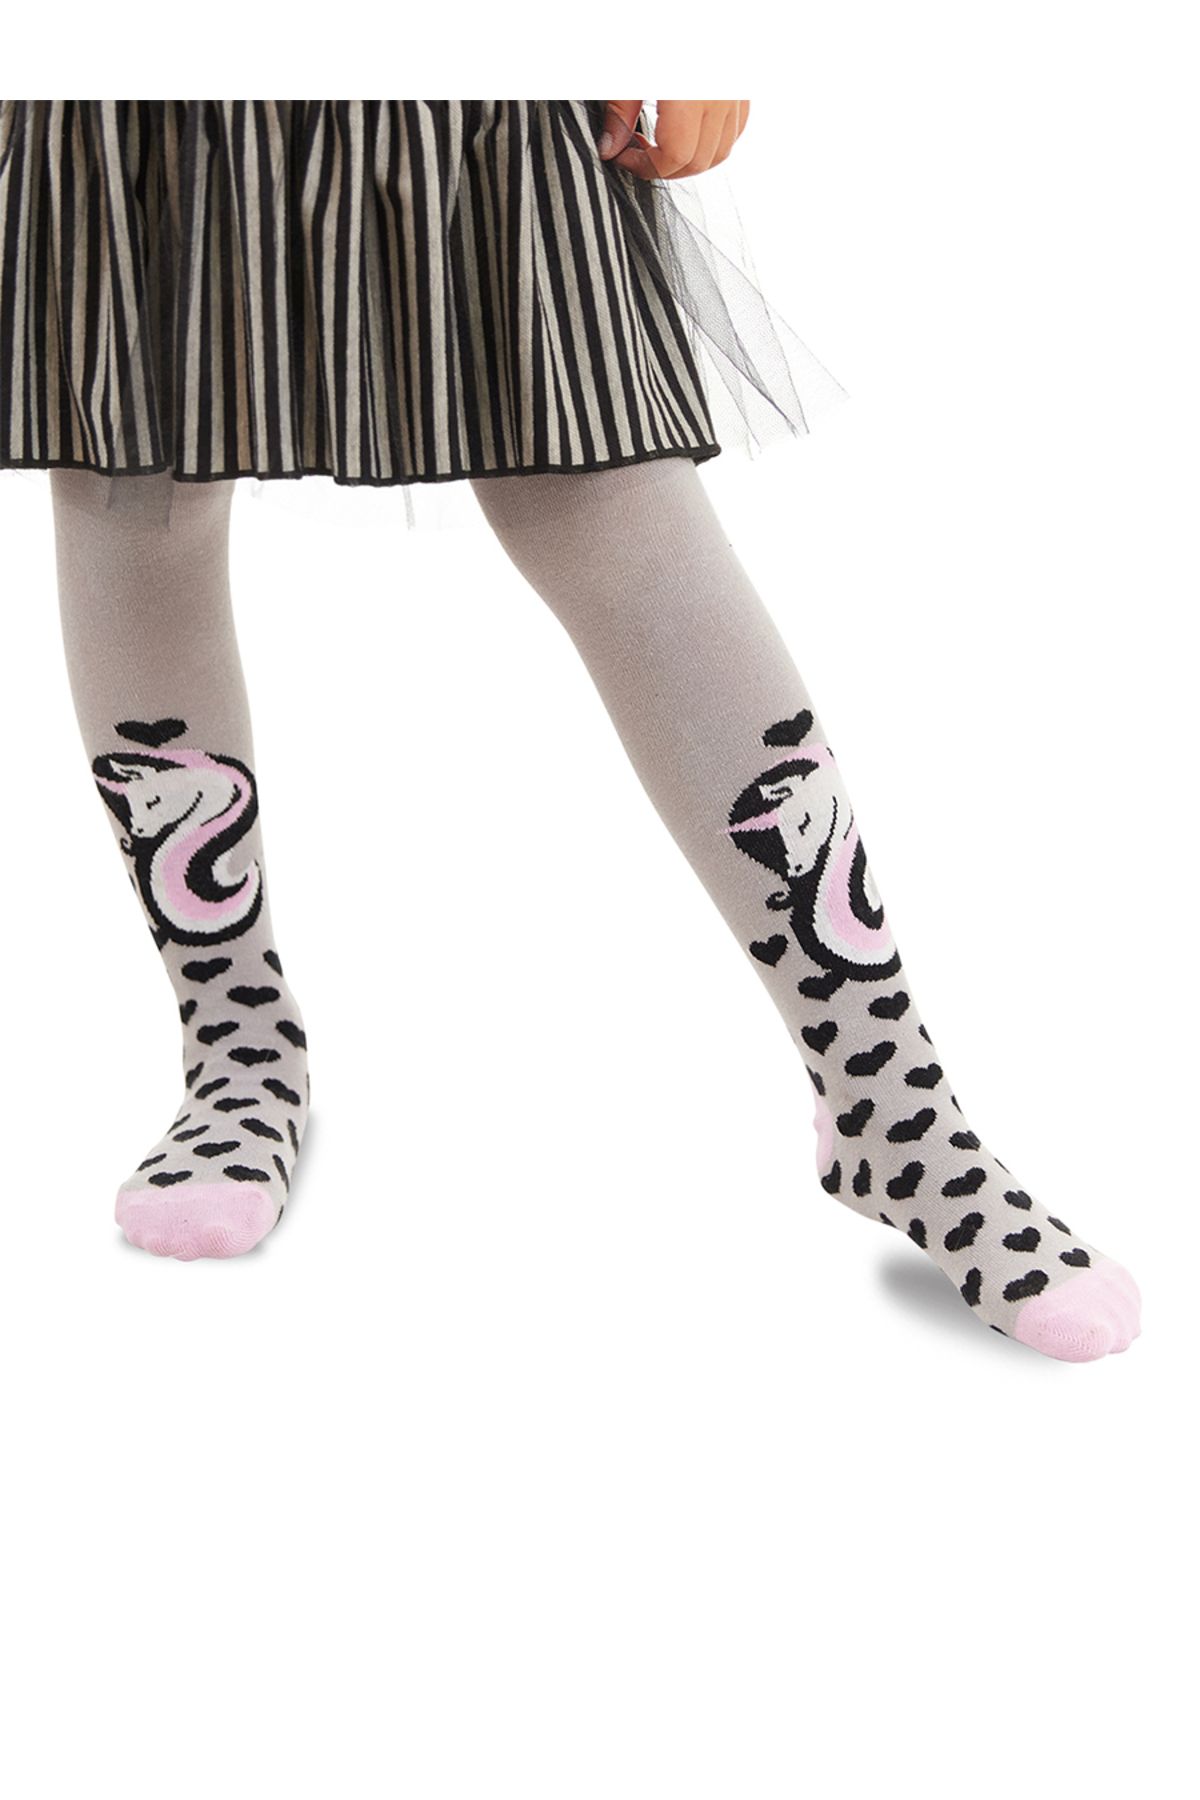 Denokids Unicorn Gri Pembe Kız Çocuk Külotlu Çorap